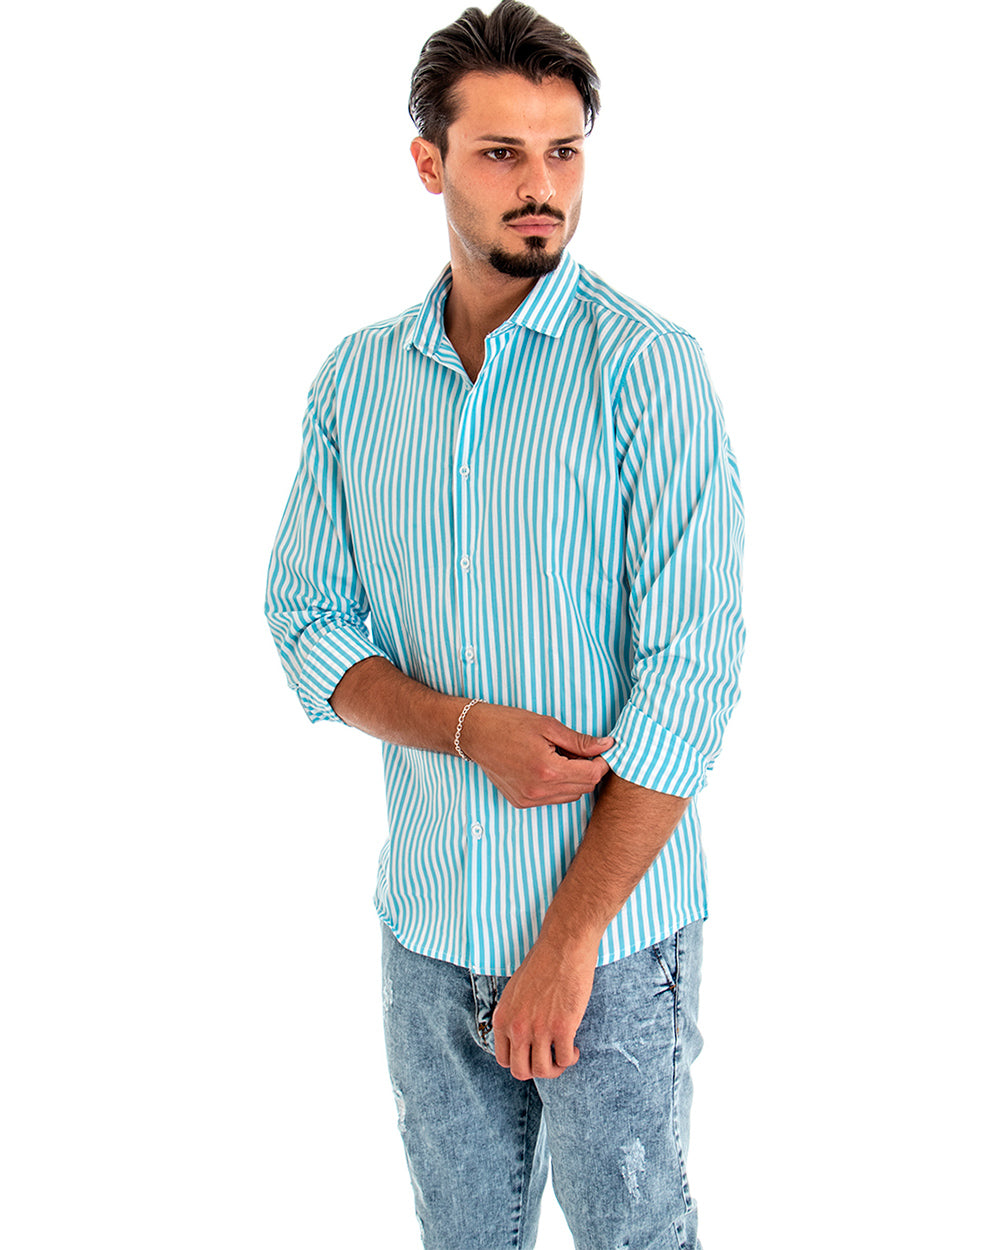 Camicia Uomo Con Colletto Manica Lunga Cotone Celeste Rigata GIOSAL-C1872A